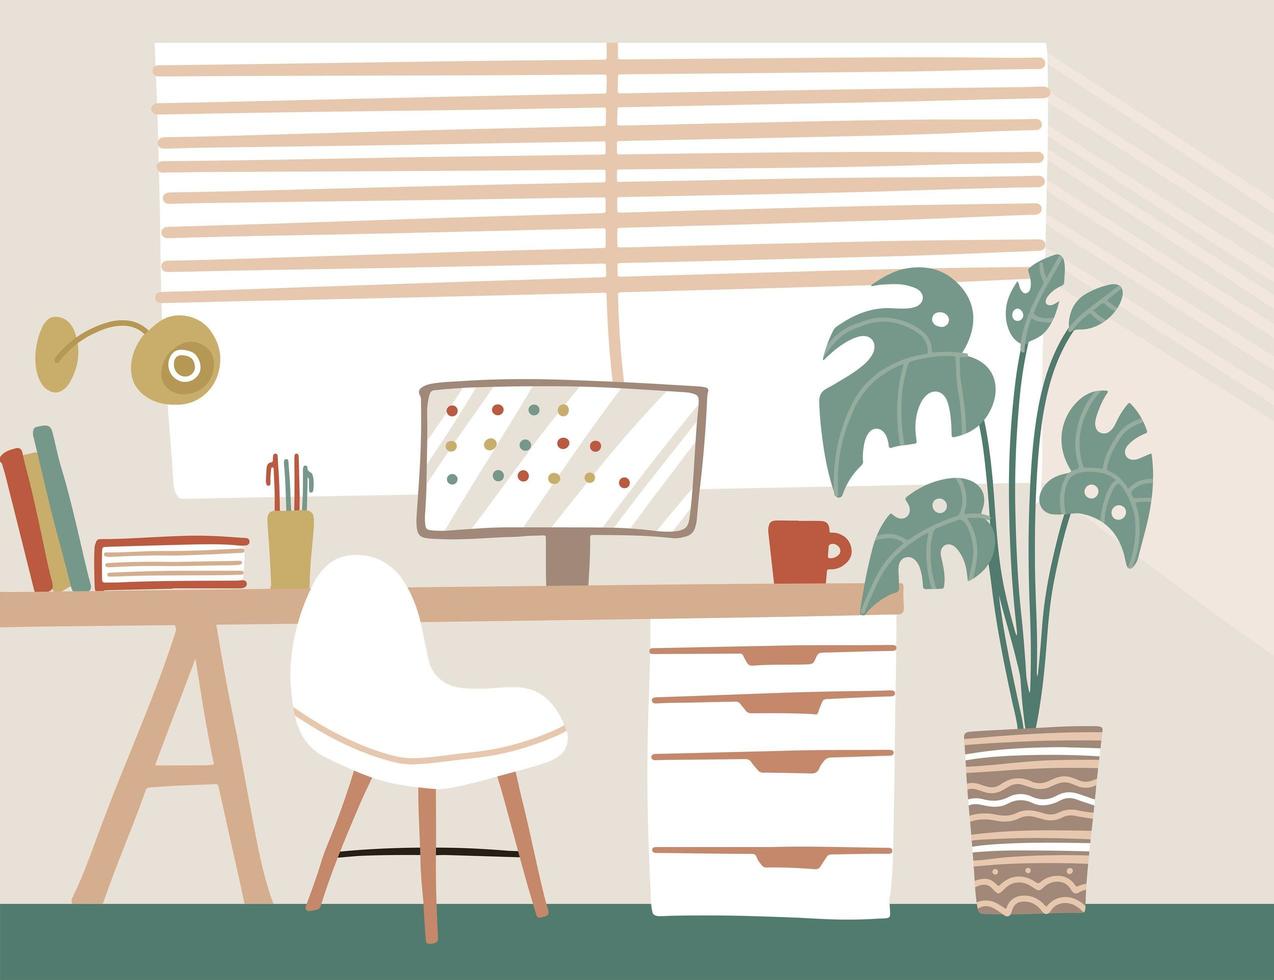 modern skandinavisk stil interiör i pastellfärger. lagom bekväm arbetsyta, mysigt hemmakontor med bord, stol, skärm och palmkrukväxter. vektor iflat handritad llustration.